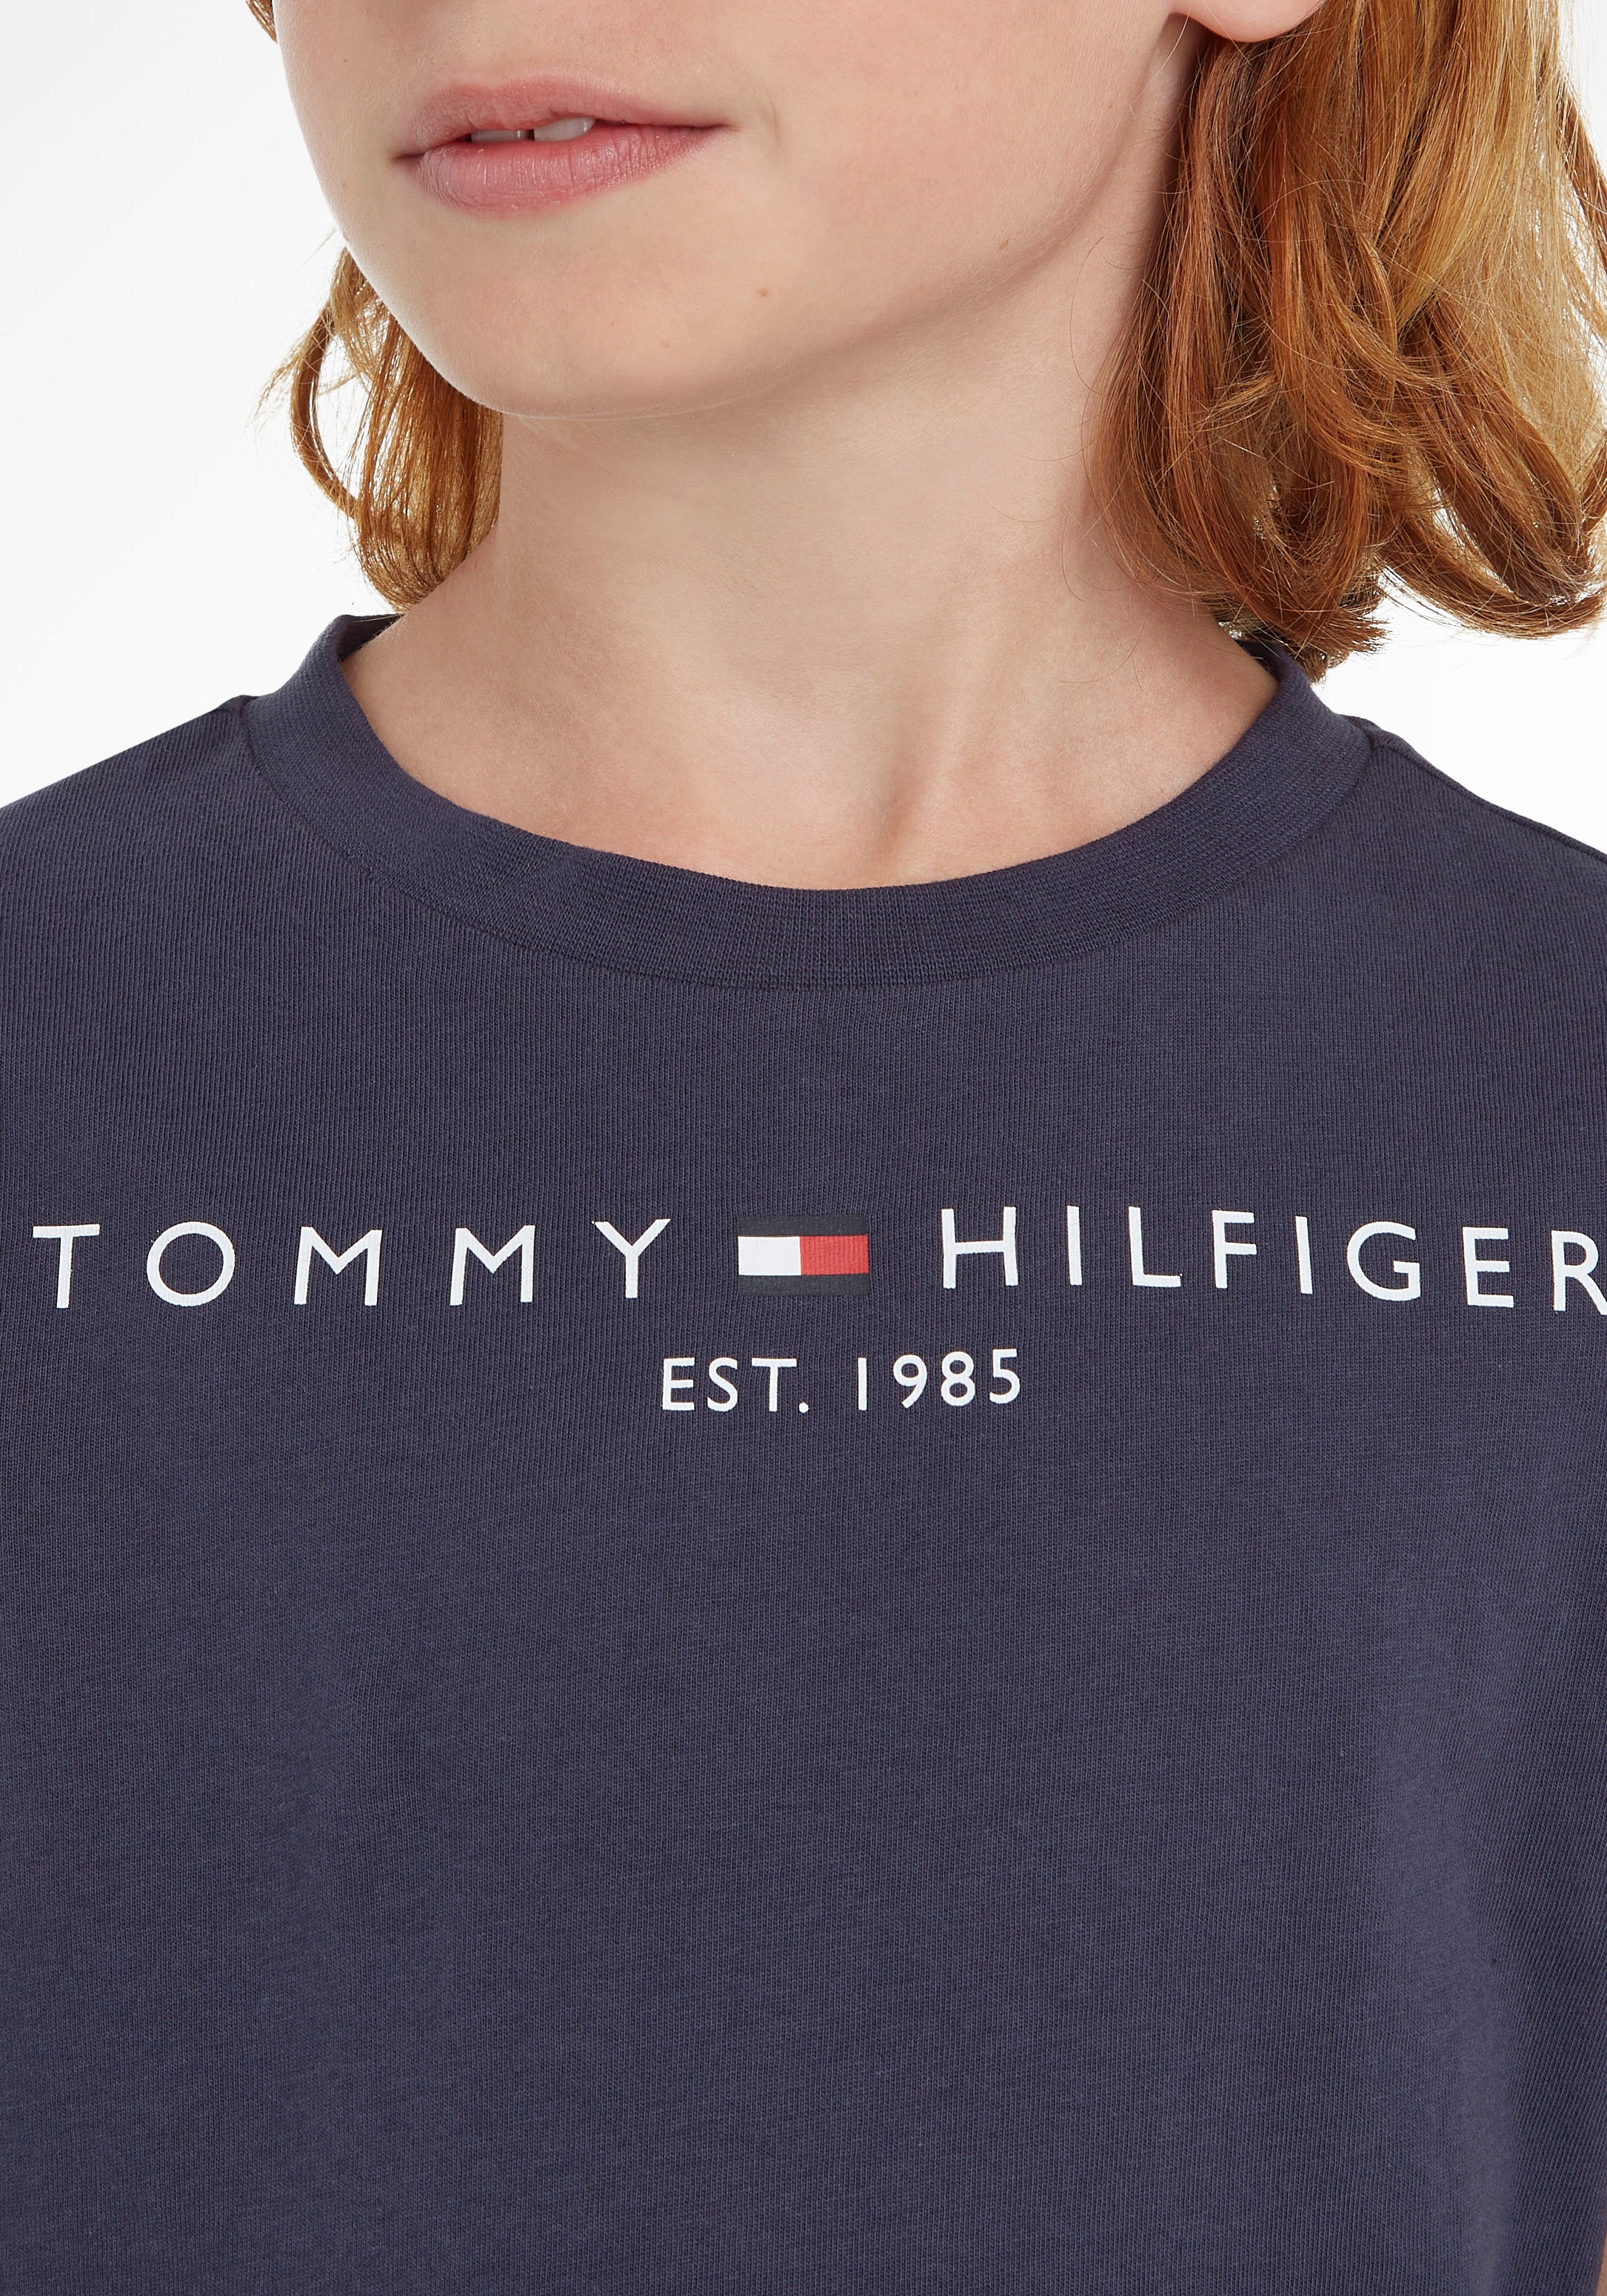 Tommy Hilfiger T-Shirt »ESSENTIAL TEE«, Kinder Kids Junior MiniMe,für Jungen  und Mädchen online kaufen